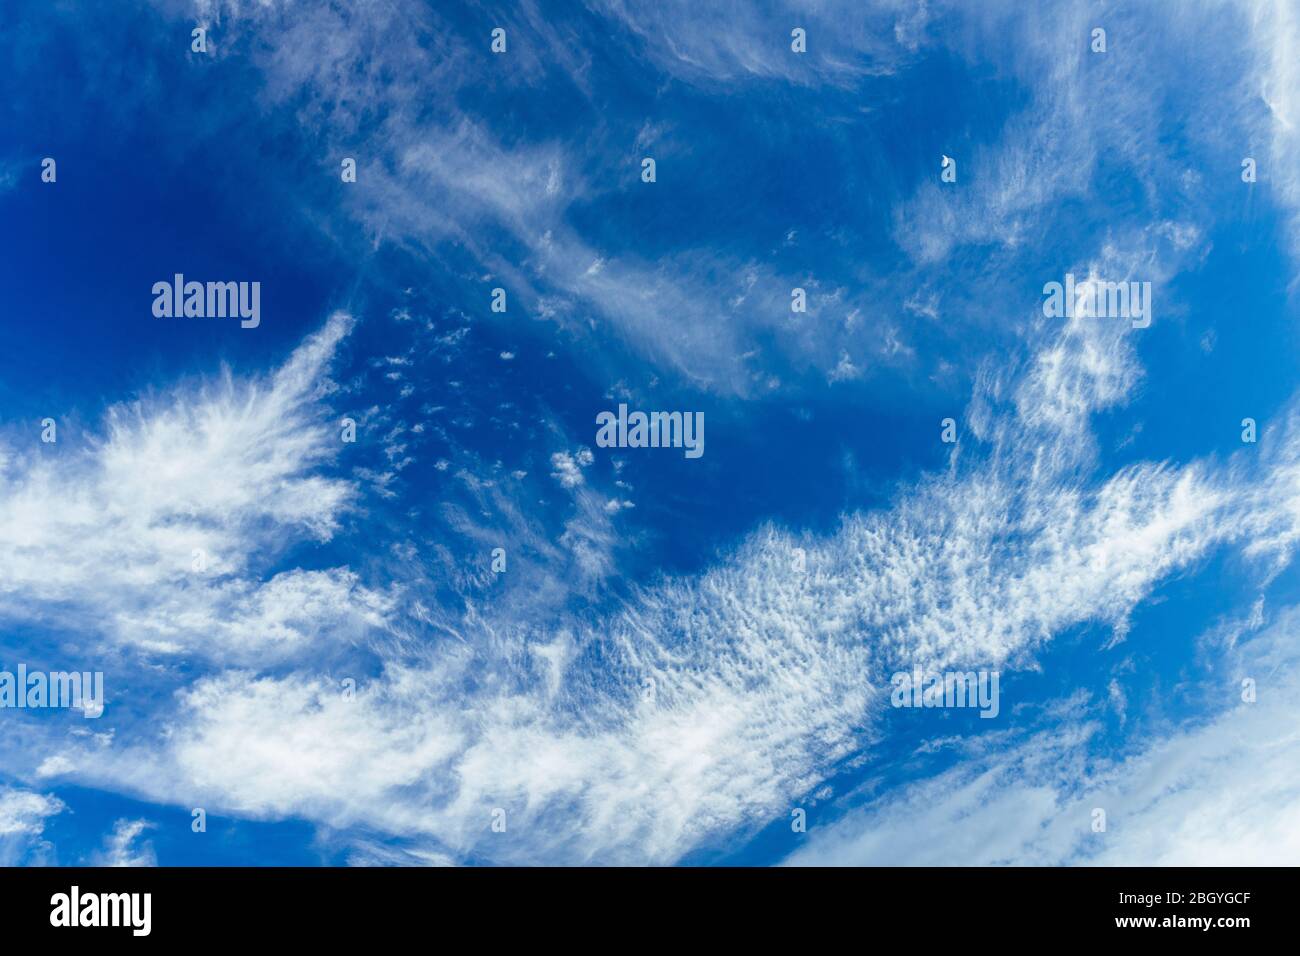 Helle und schöne Fotos von der himmlischen weißen Wolken und gesättigten blauer Himmel mit Sonnenschein. Leichte, zart und luftig bewölkt Hintergrund mit weißen und b Stockfoto